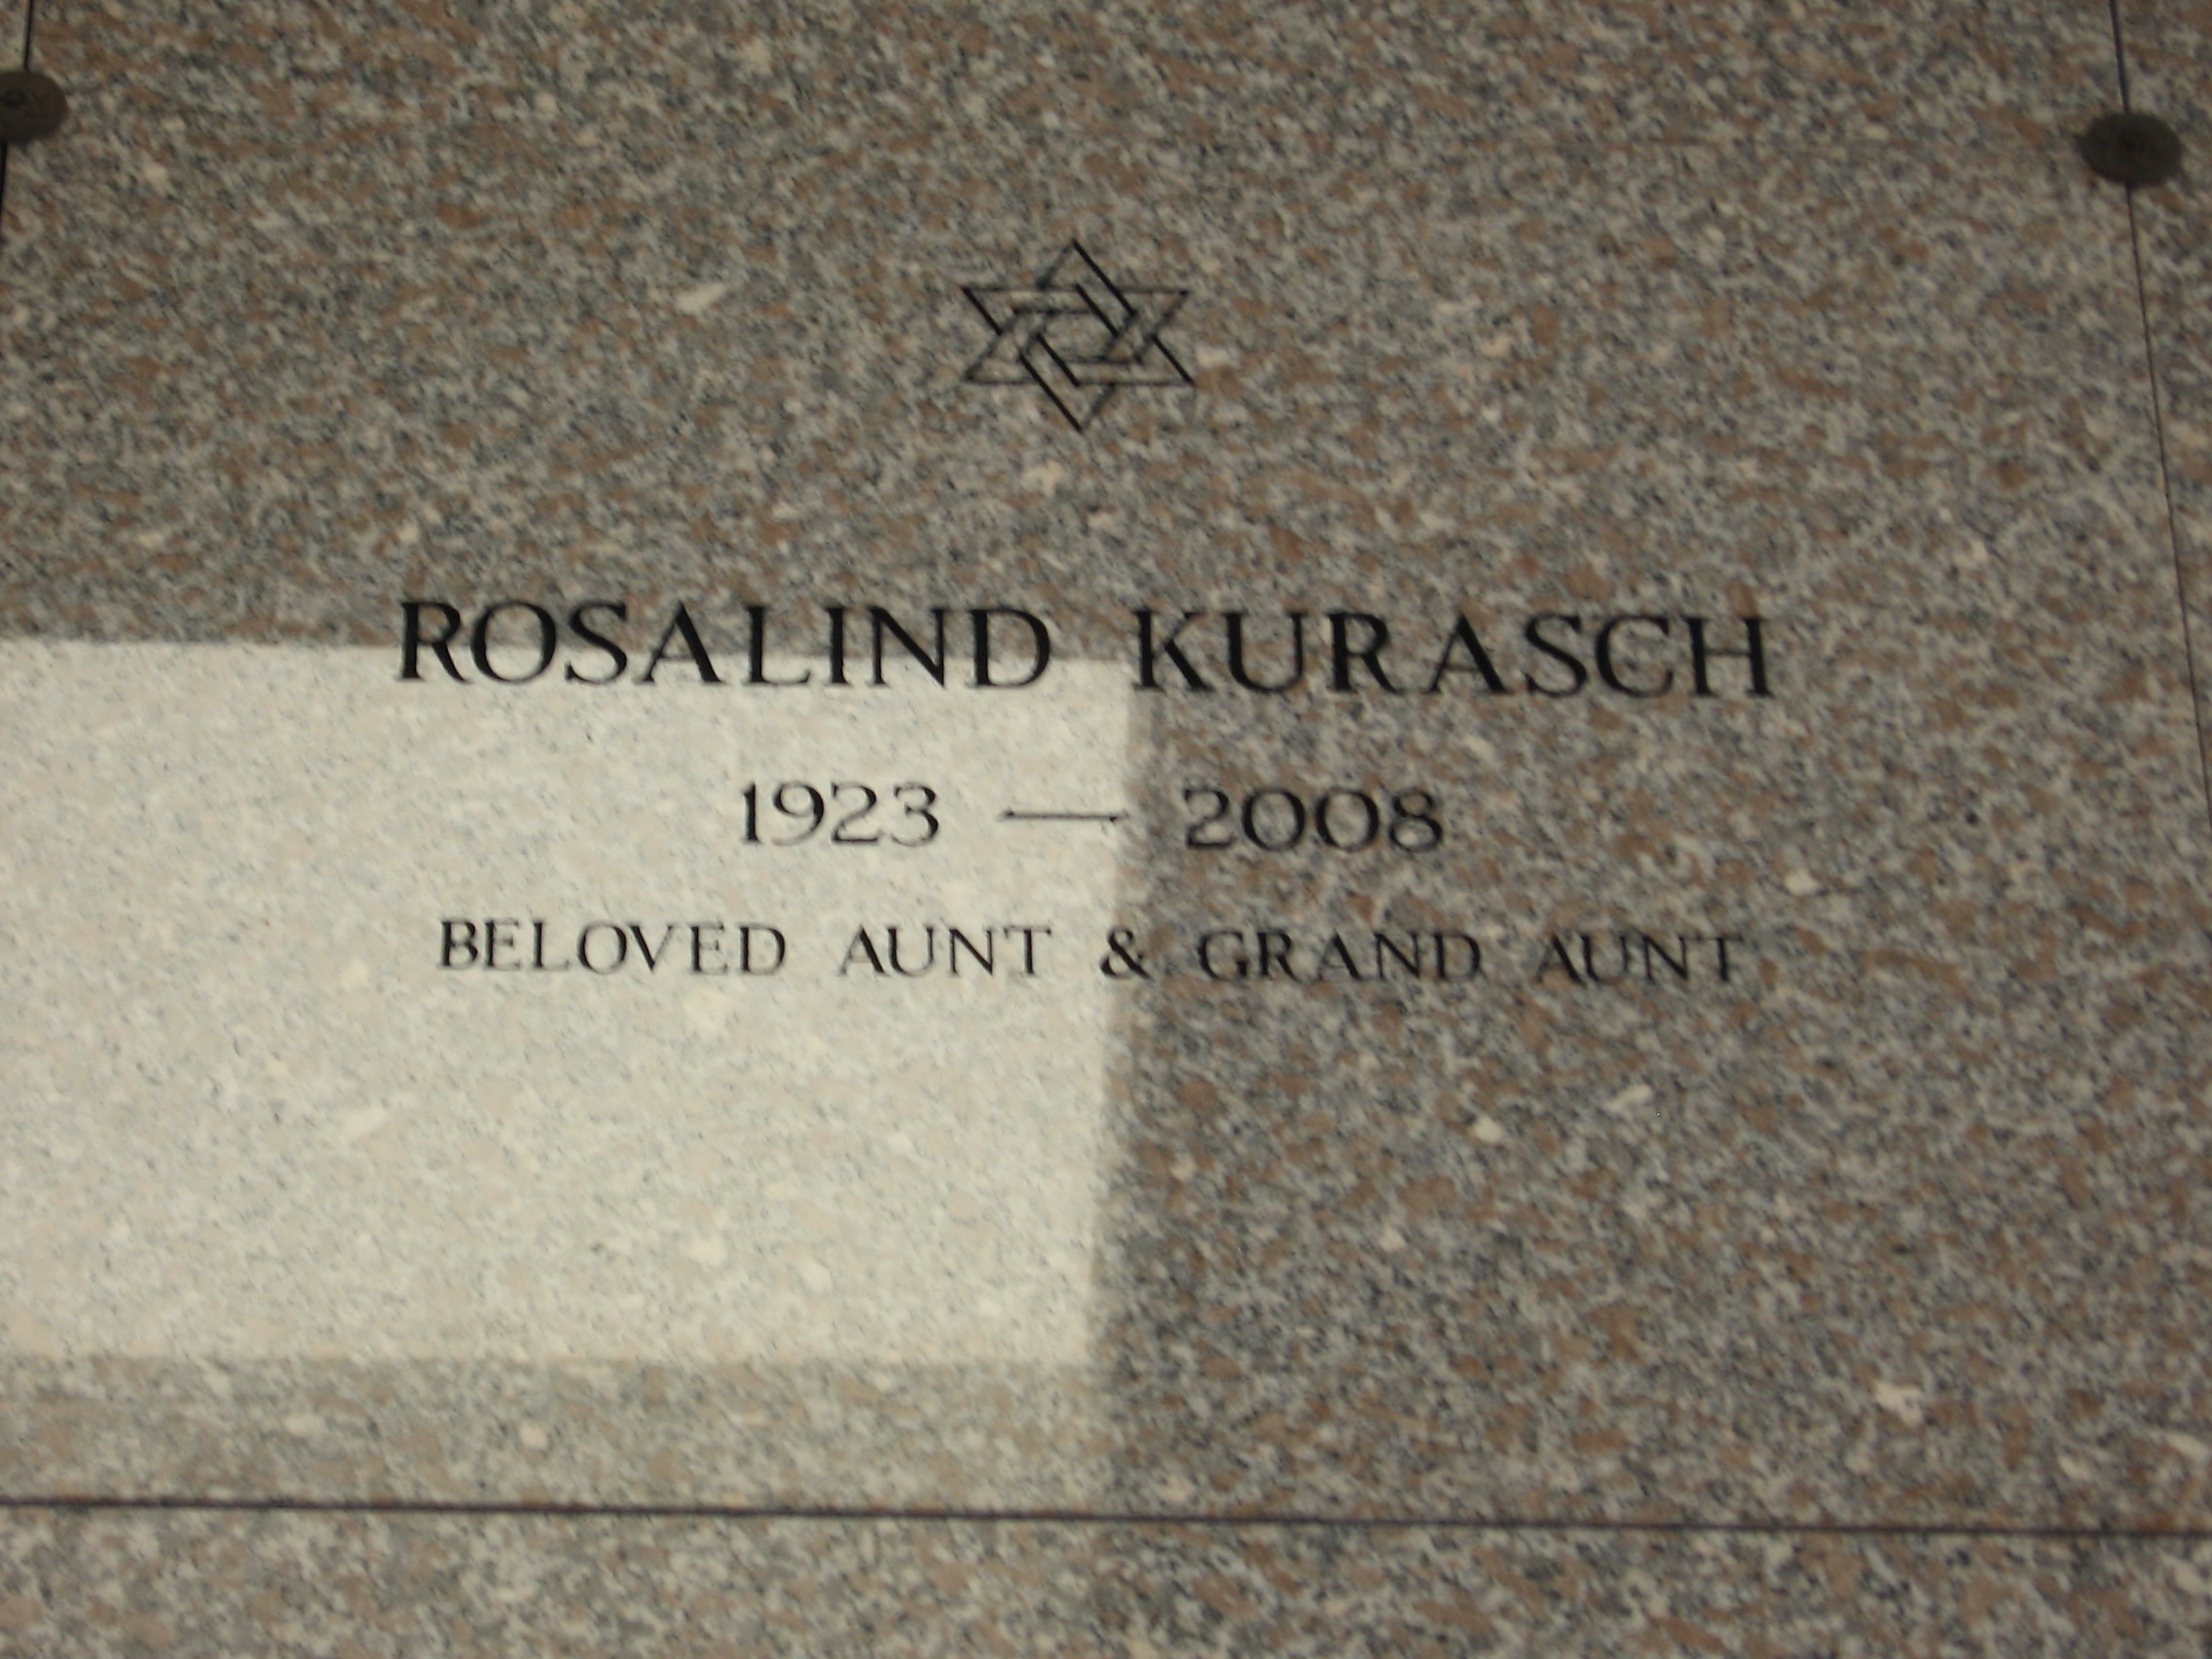 Rosalind Kurasch